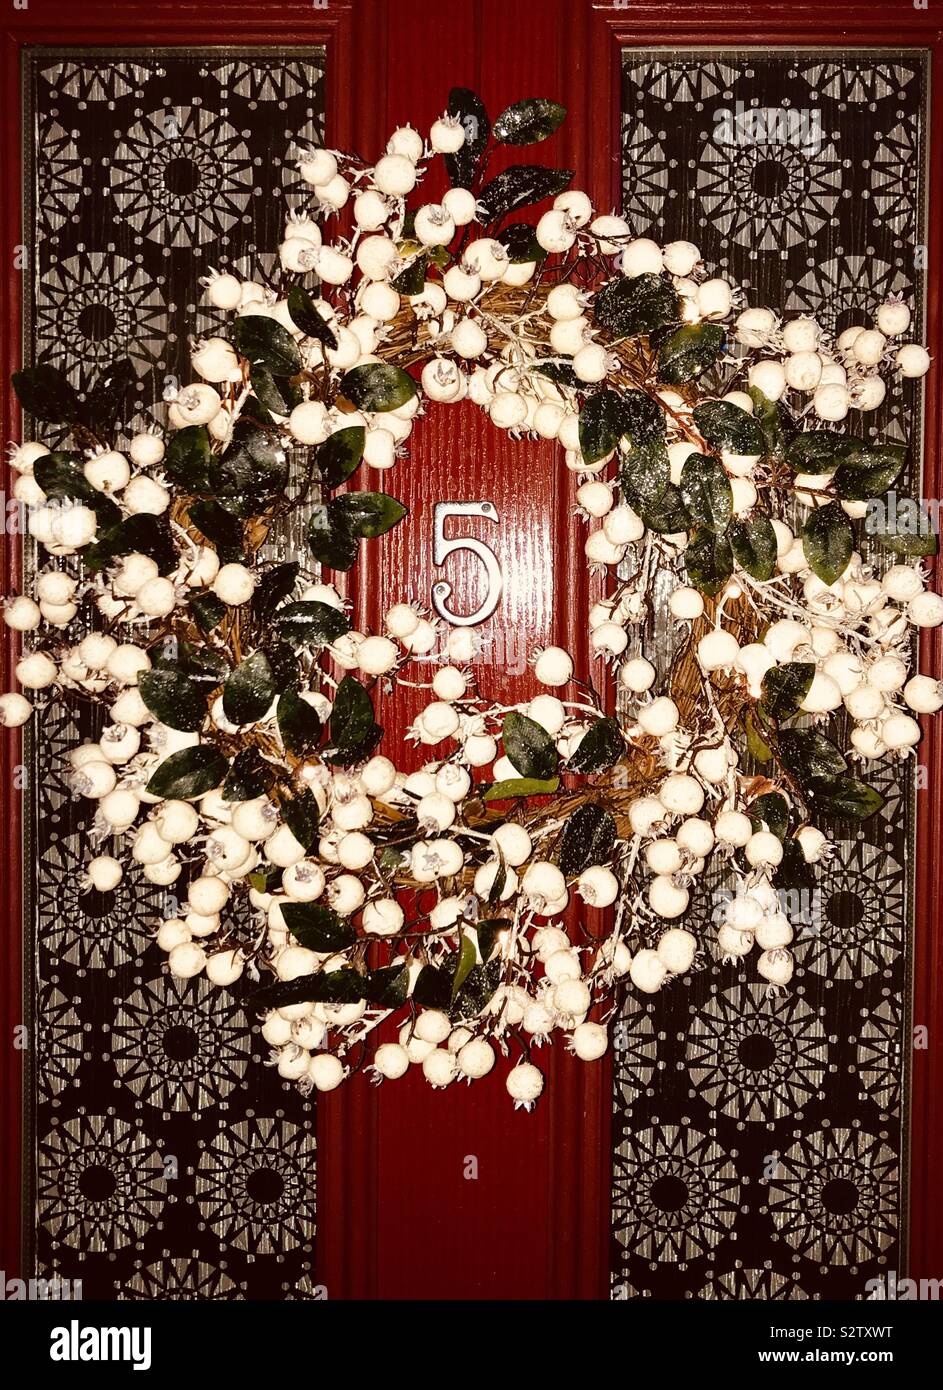 Berry wreath on red front door Stock Photo